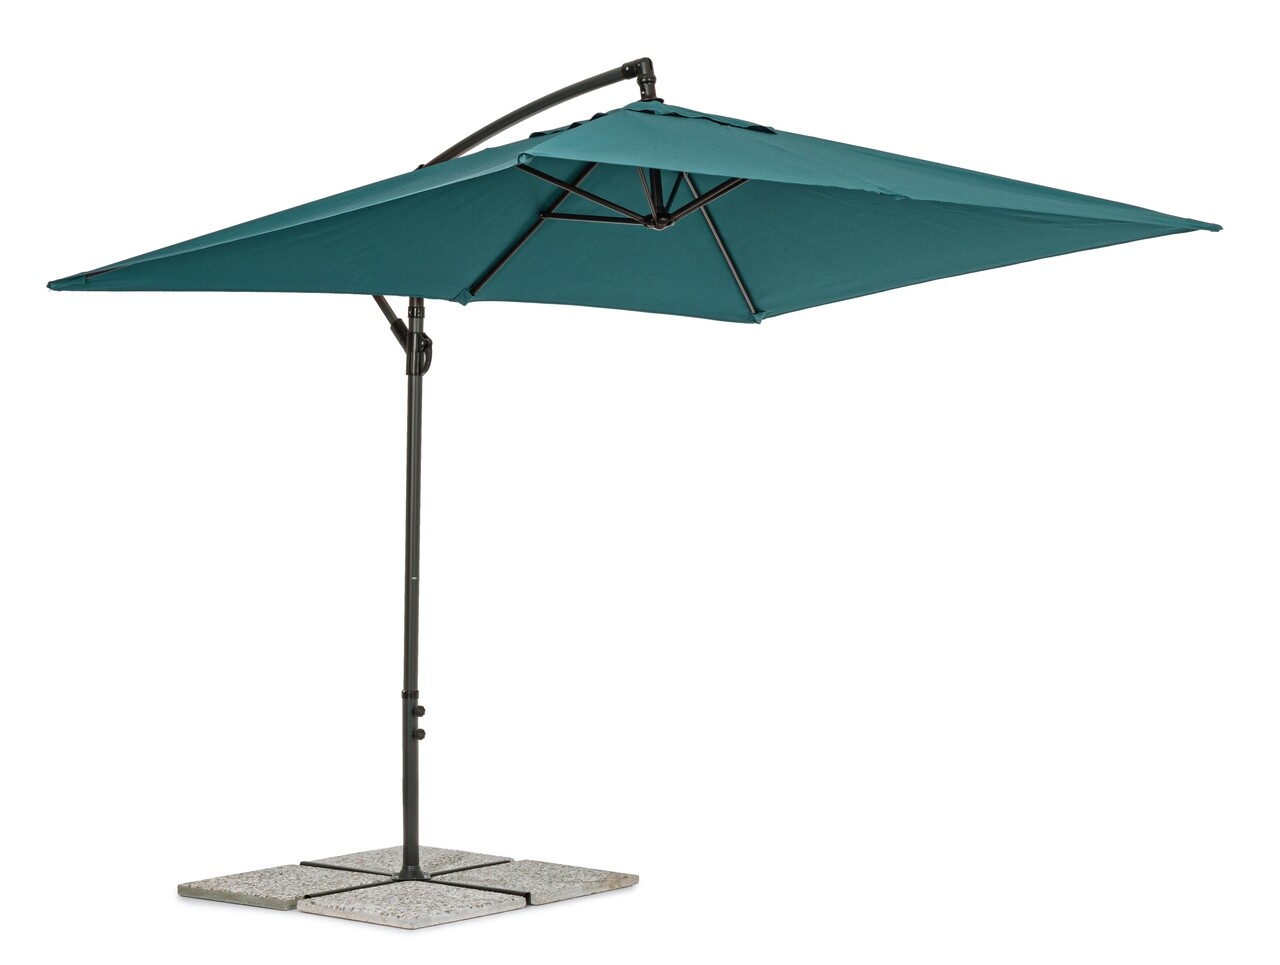 Texas Terasz/kerti napernyő, Bizzotto, 300 x 200 x 260 cm, oszlop 48 mm, 360° forgó oszlop, acél/poliészter, kék